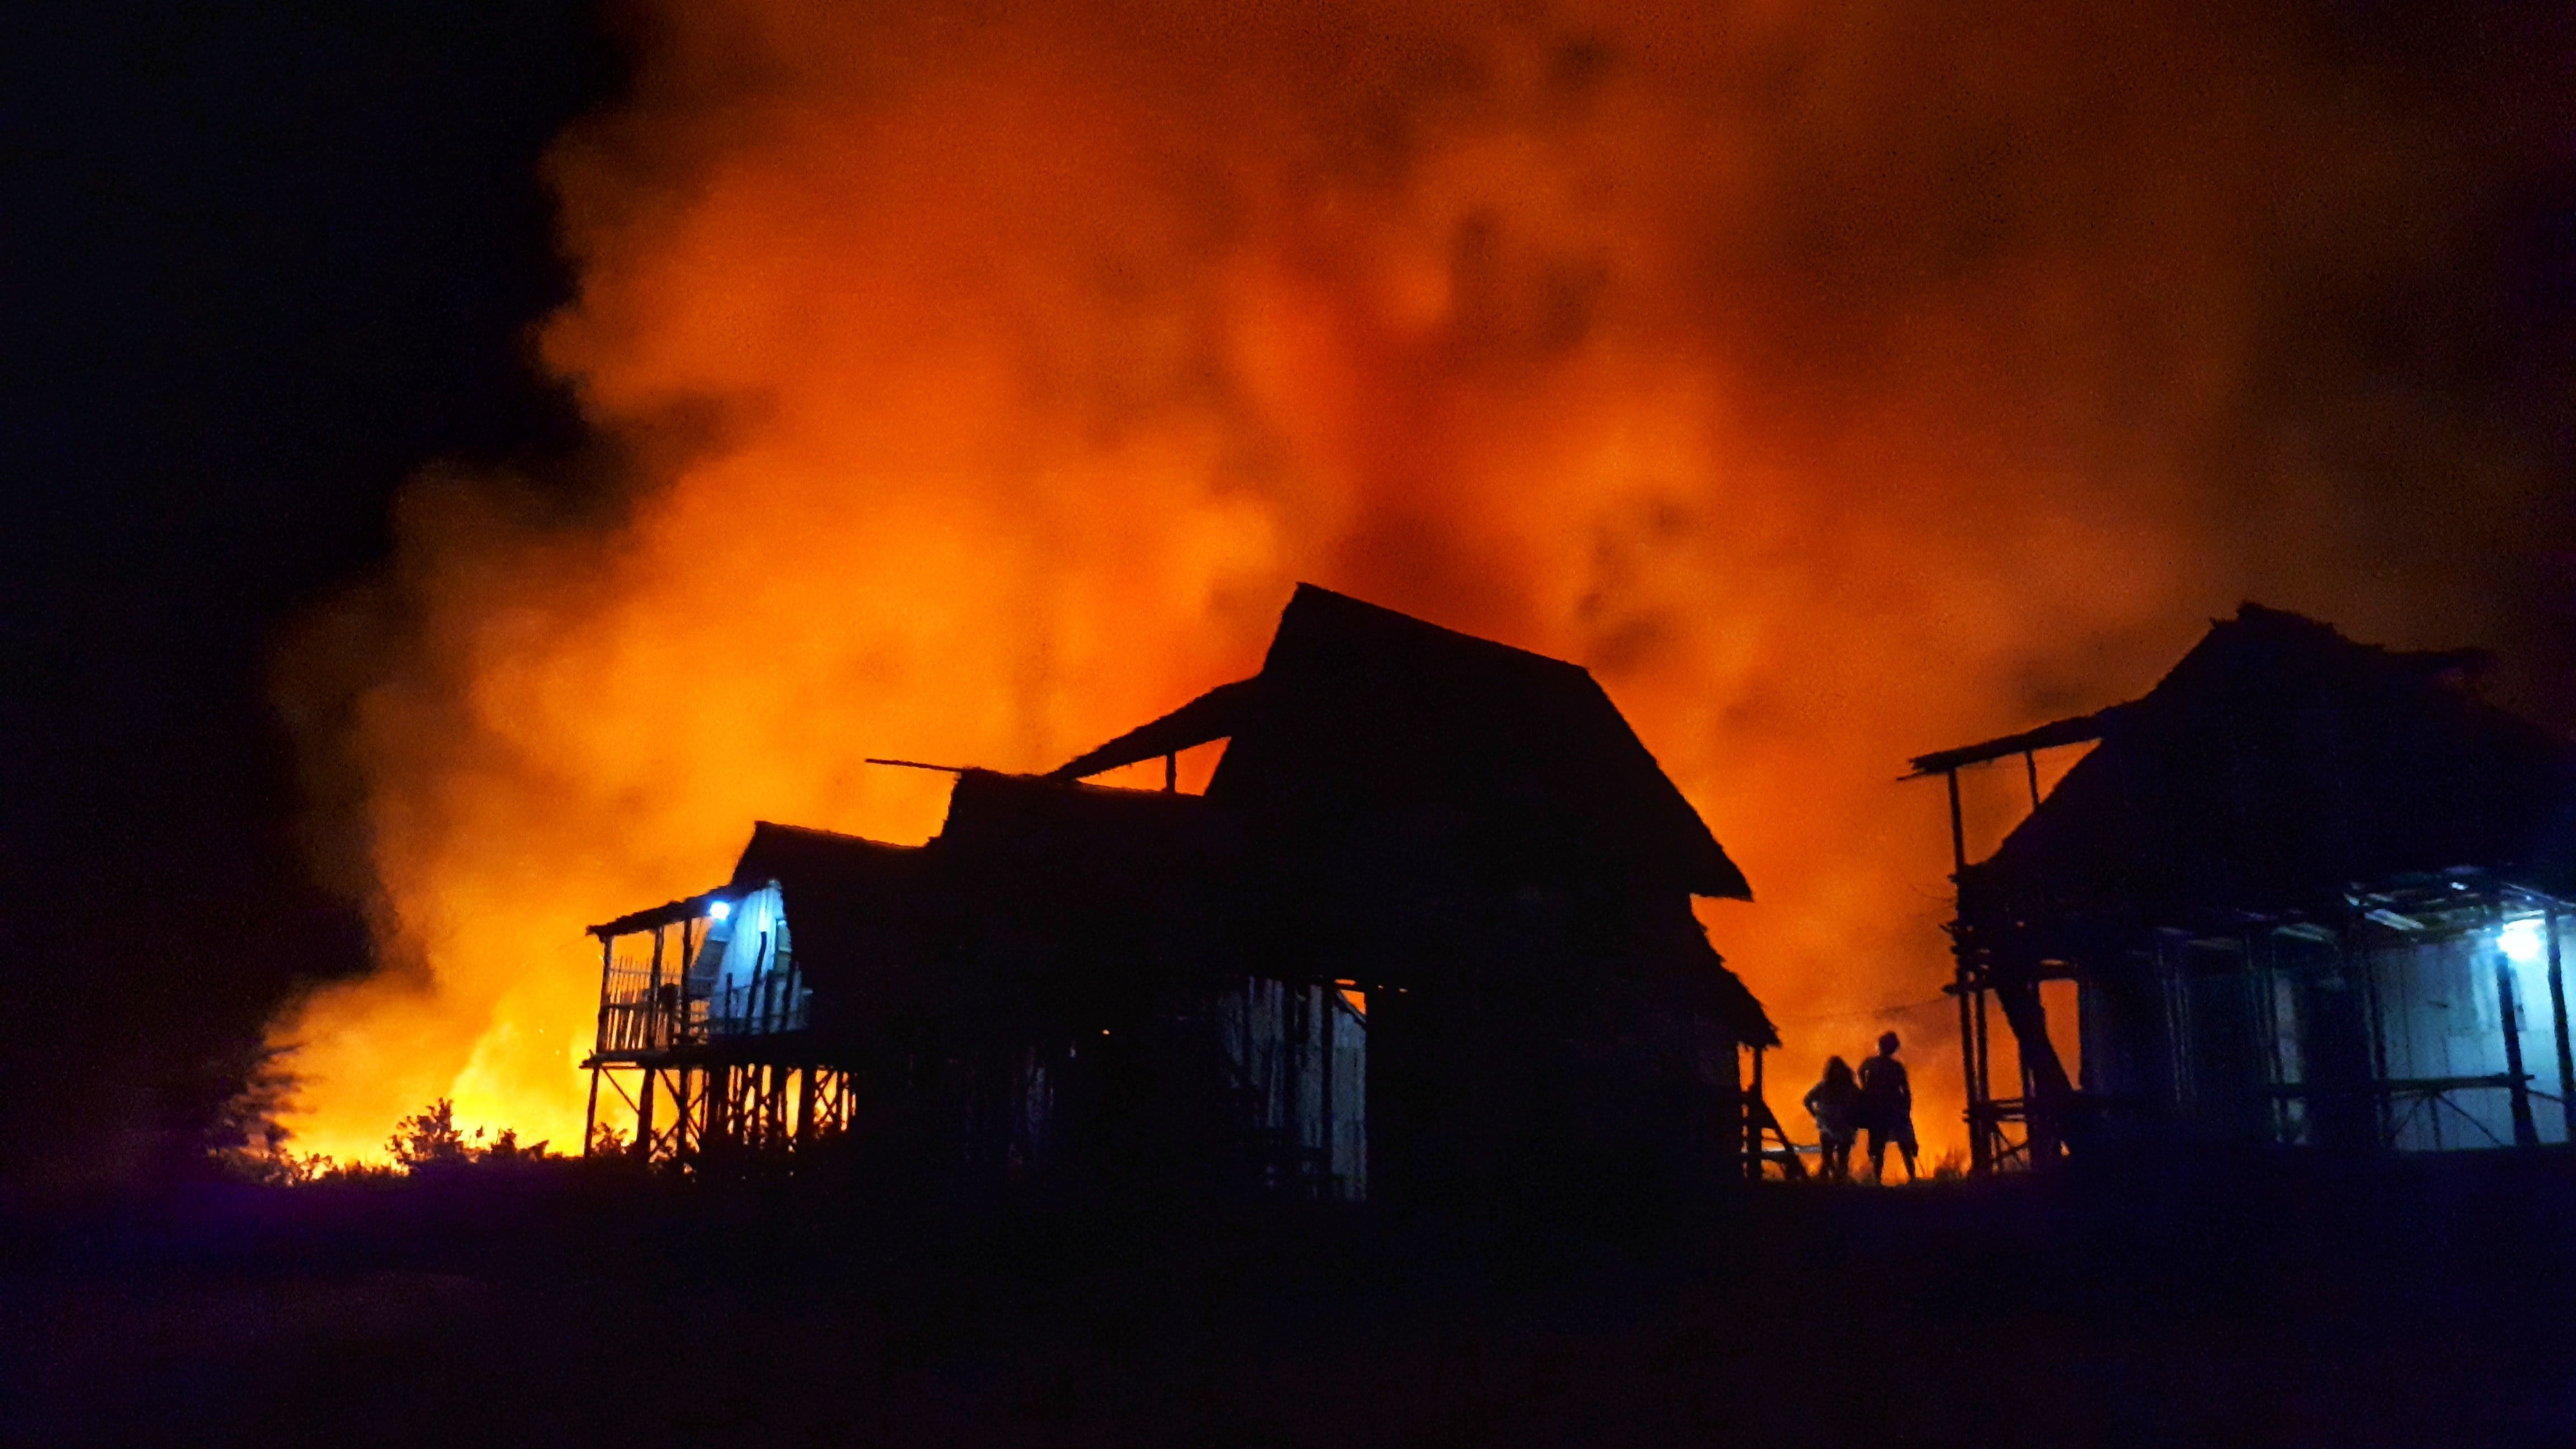 La maison de Mme Stanley a été détruite dans un incendie | Photo : Unsplash